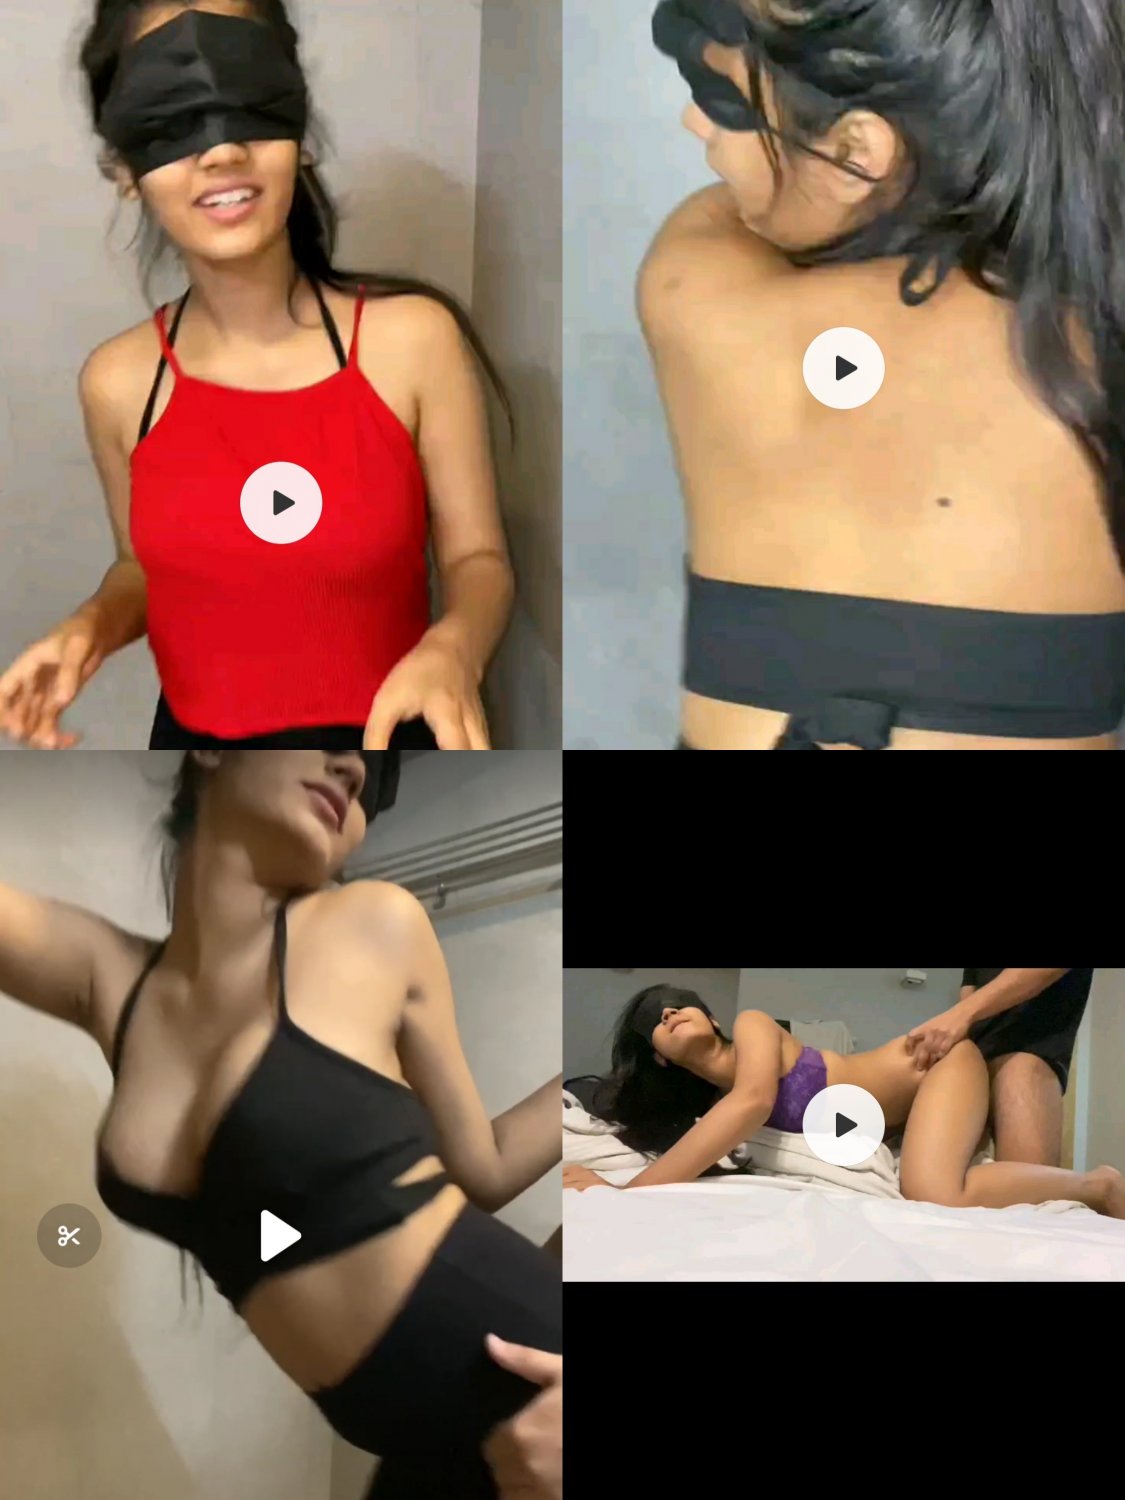 Masked Sex - MASK GIRL VIRAL VIDEOS LINKS POSTED BELOW - Porn - EroMe